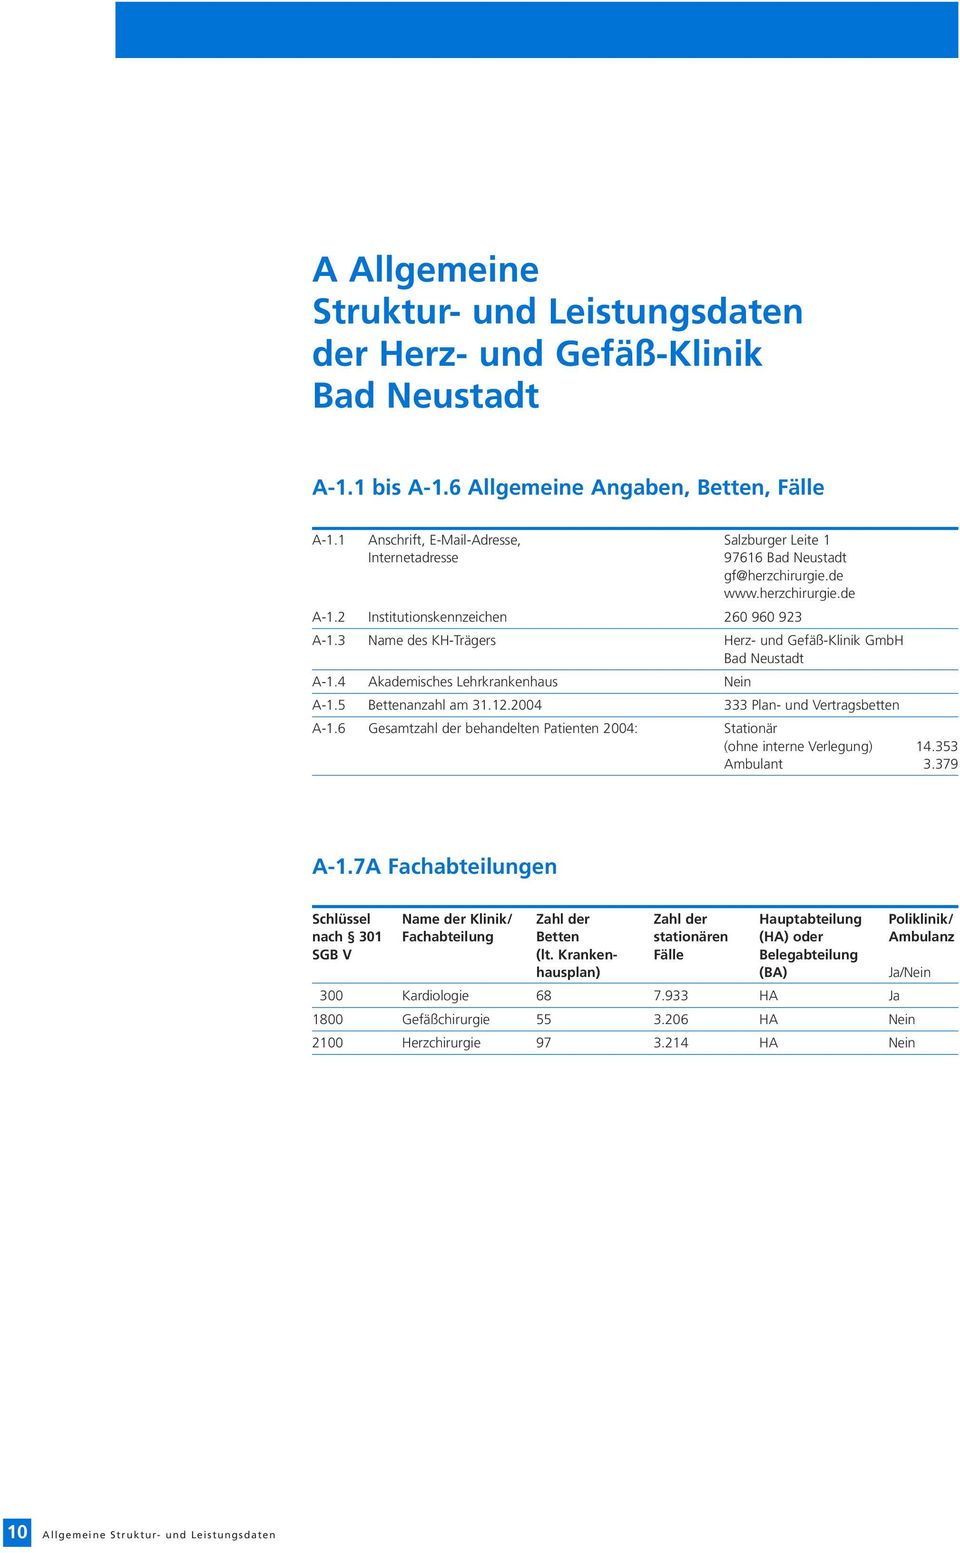 3 Name des KH-Trägers Herz- und Gefäß-Klinik GmbH Bad Neustadt A-1.4 Akademisches Lehrkrankenhaus Nein A-1.5 Bettenanzahl am 31.12.2004 333 Plan- und Vertragsbetten A-1.